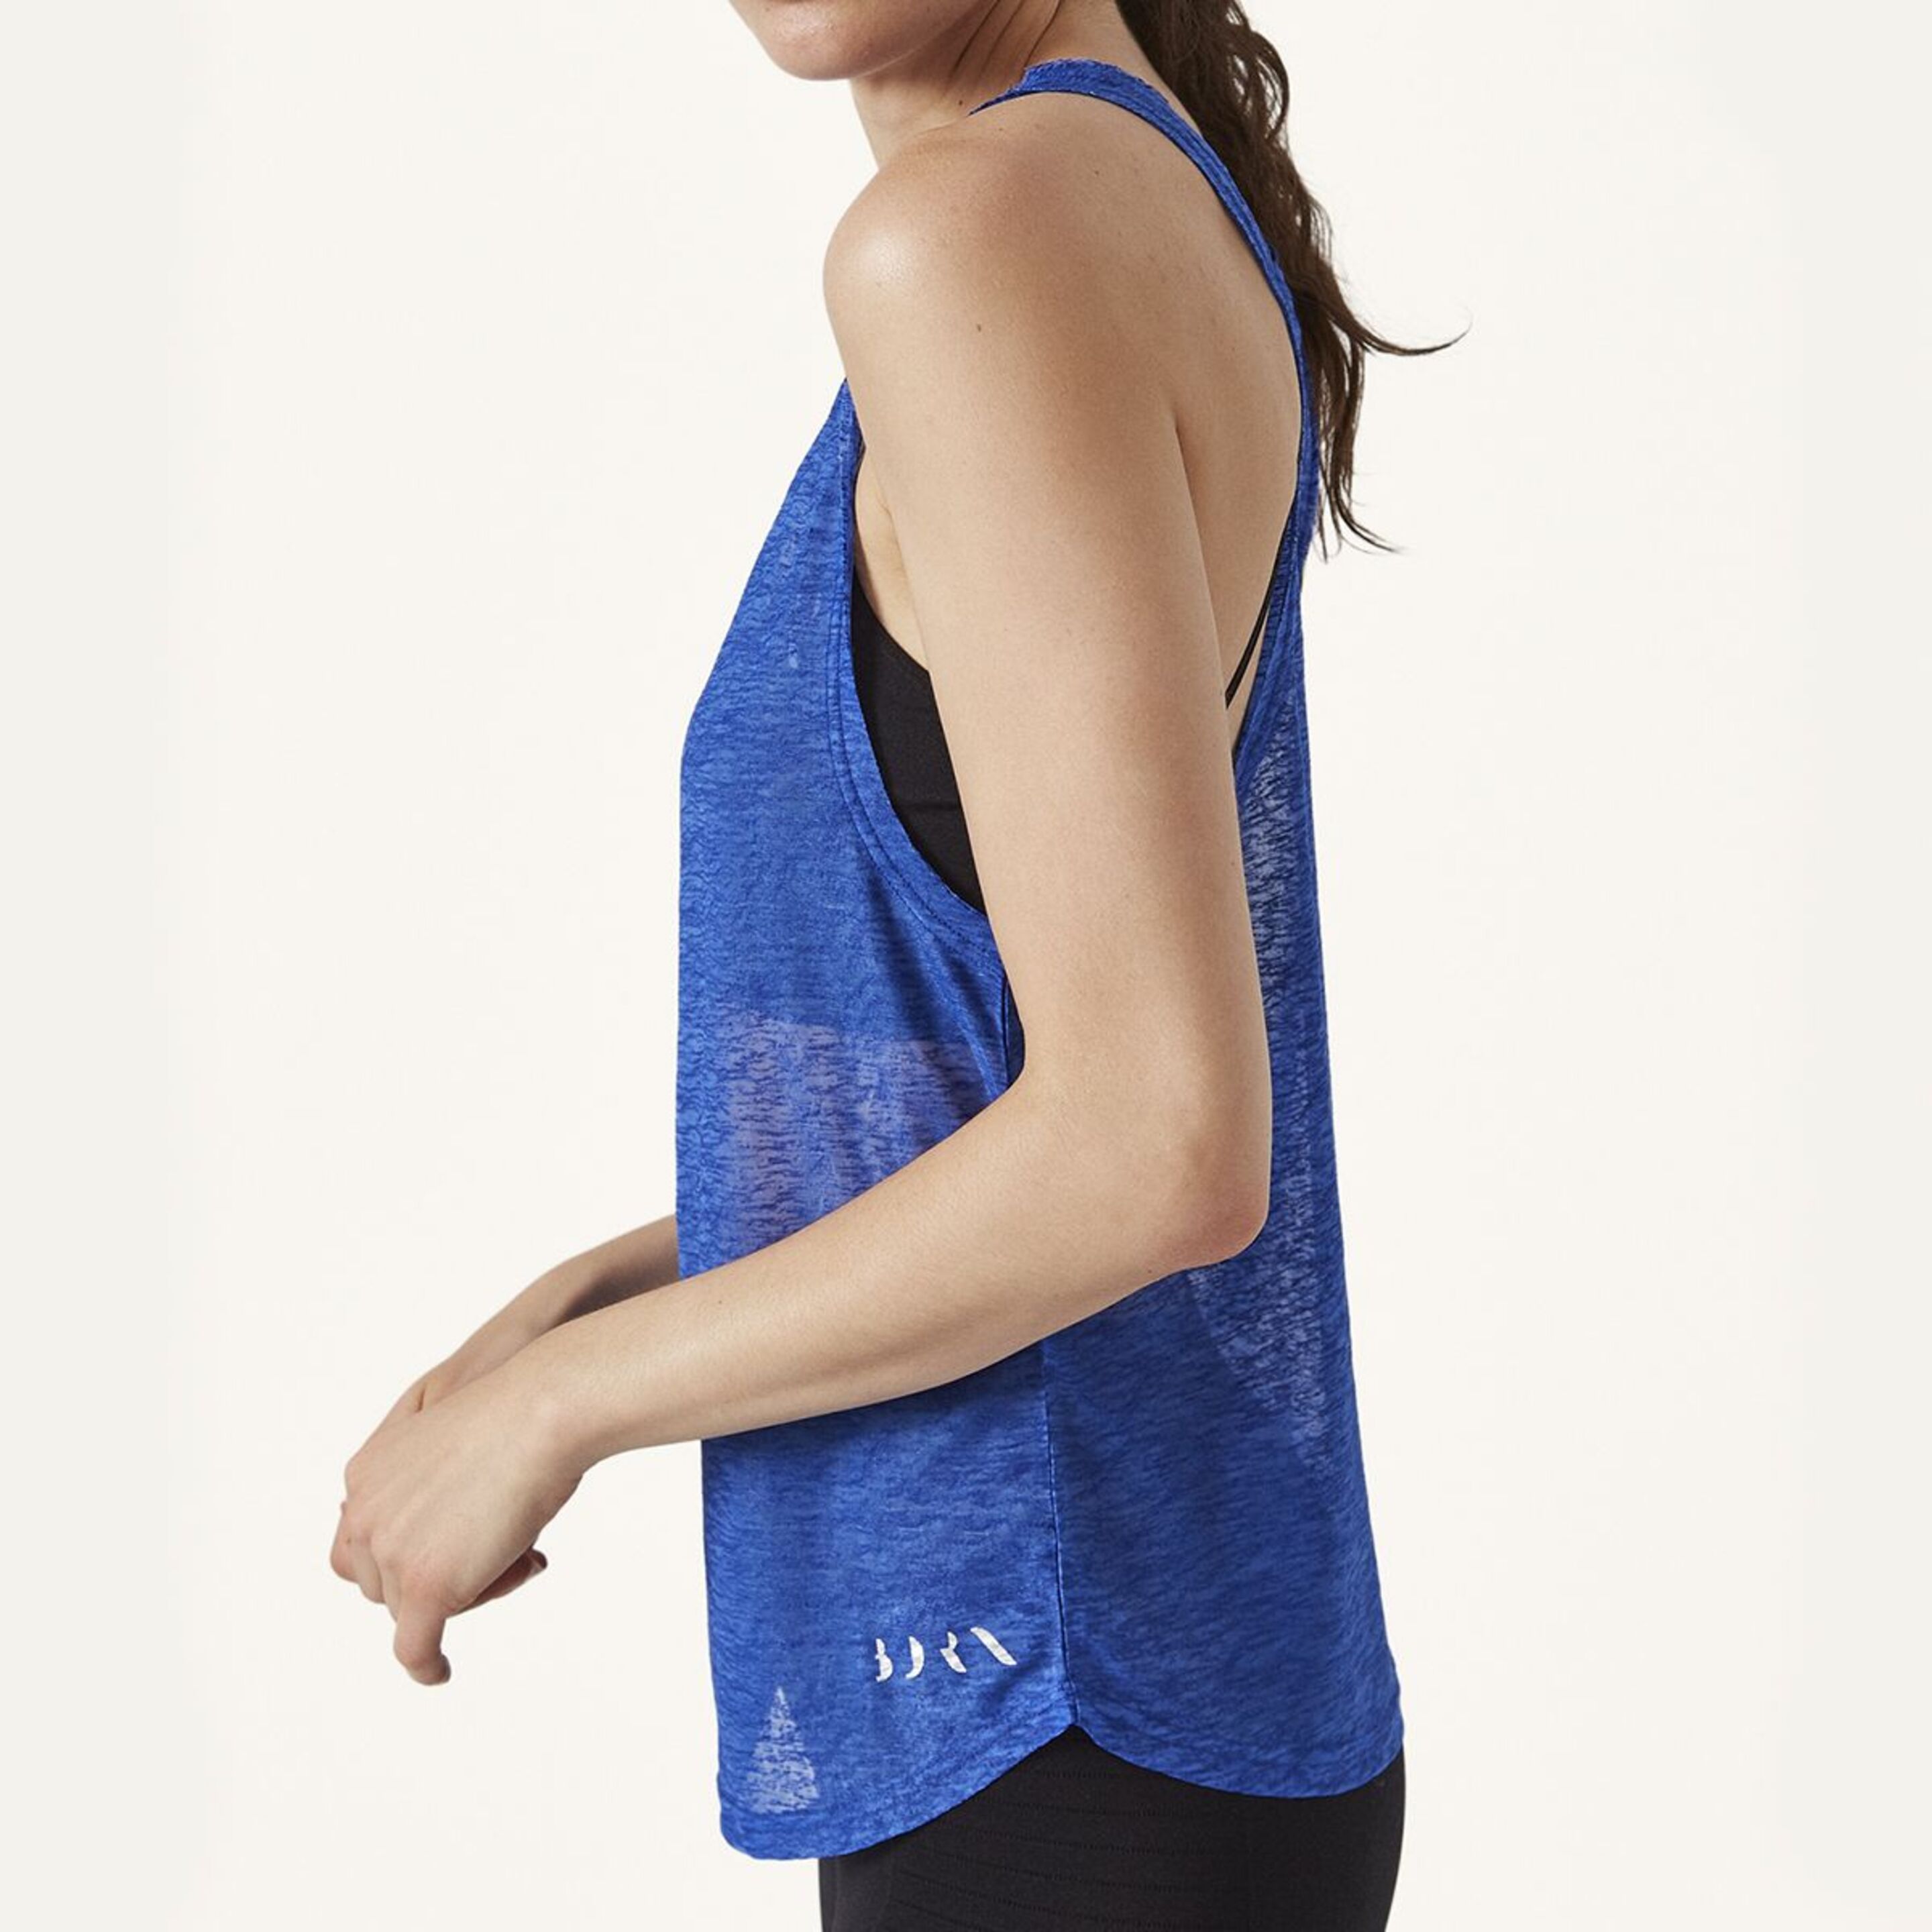 Camiseta De Mujer Light Born Living Yoga Color Azul